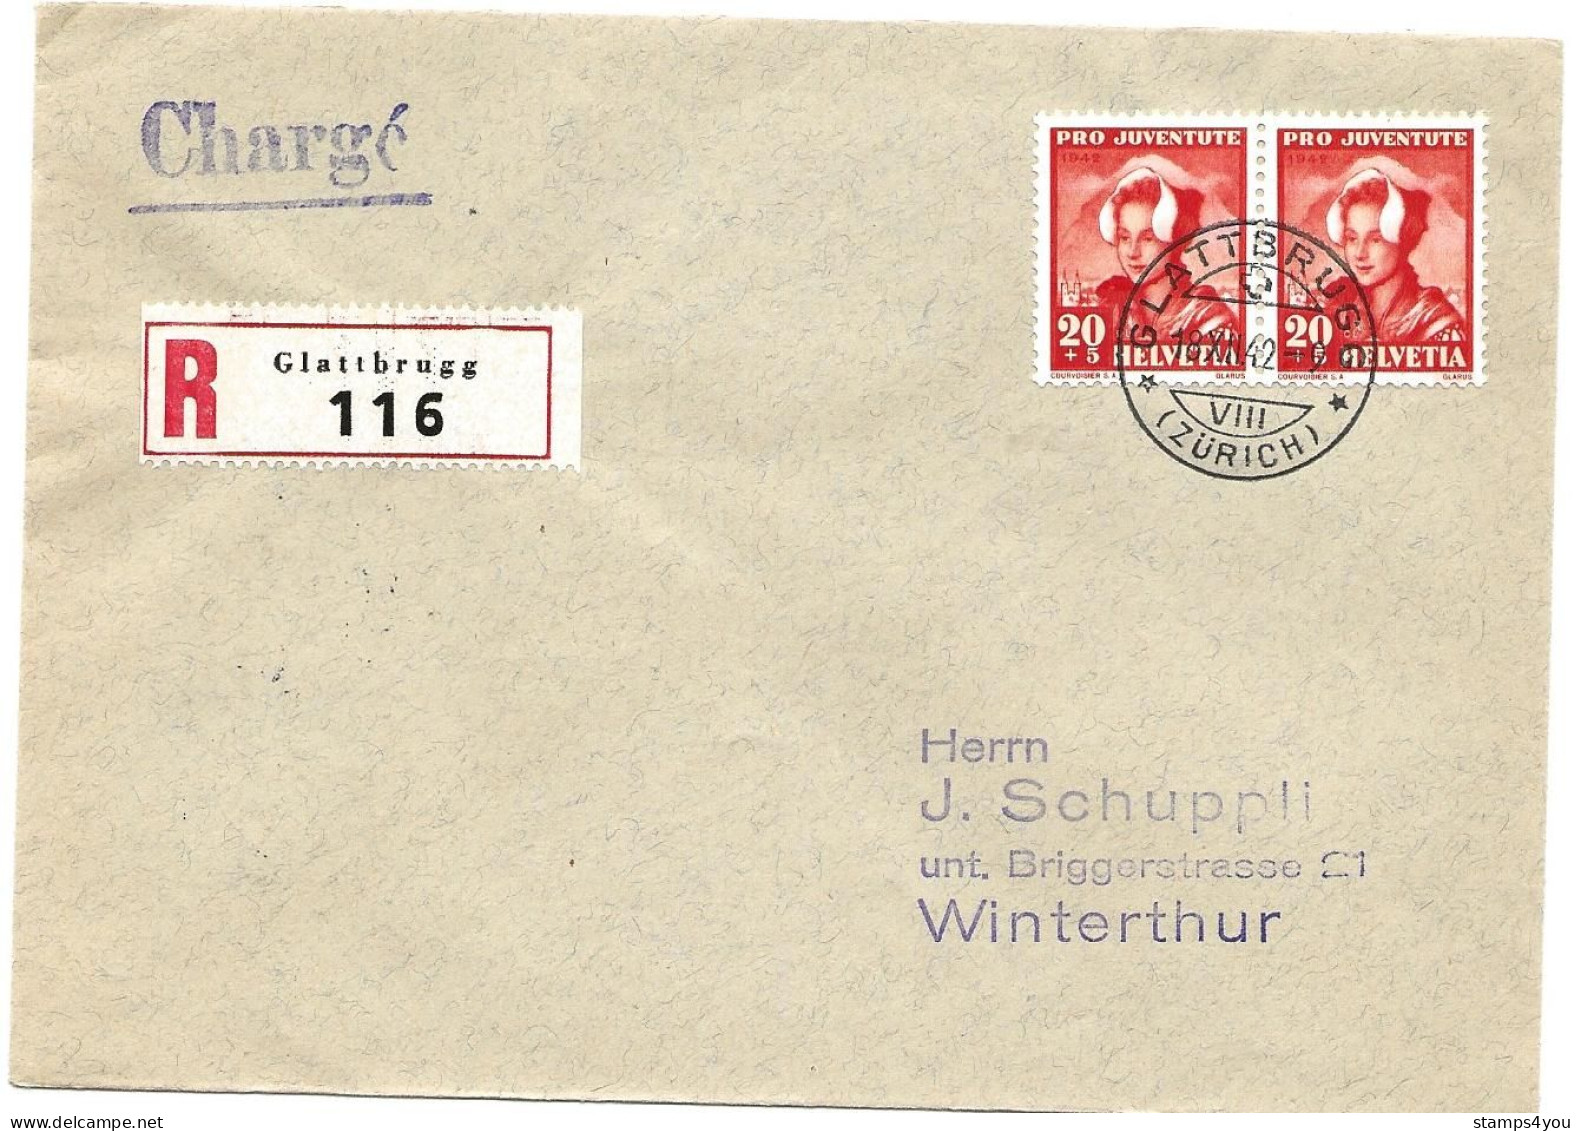 33 - 79 - Enveloppe Recommandée Envoyée De Glattbrugg 1942 - Timbres Pro Juventute - Briefe U. Dokumente